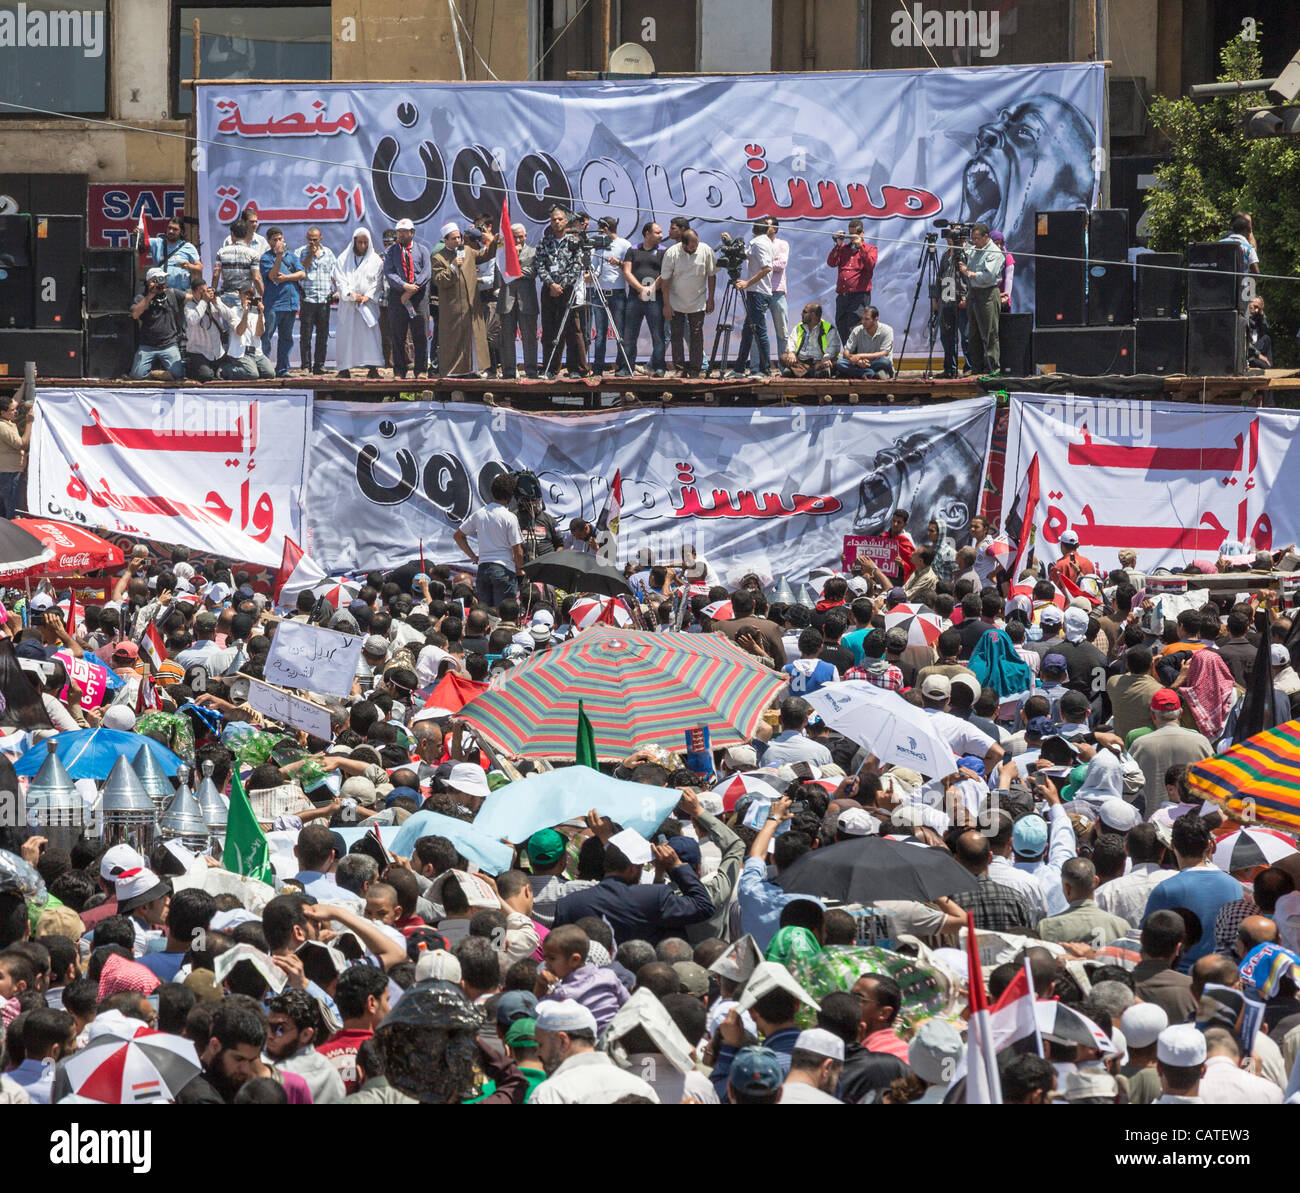 Kairo, Ägypten. 20. April 2012. Anti-Militär Demonstranten warten Freitagsgebet am Tahrir-Platz in Kairo, Ägypten. Ägyptens Islamisten, liberale und linke Kräfte sammeln in Tahrir-Platz gegen ehemaligen Regime Reste und fortgesetzte militärische Herrschaft demonstrieren. Stockfoto